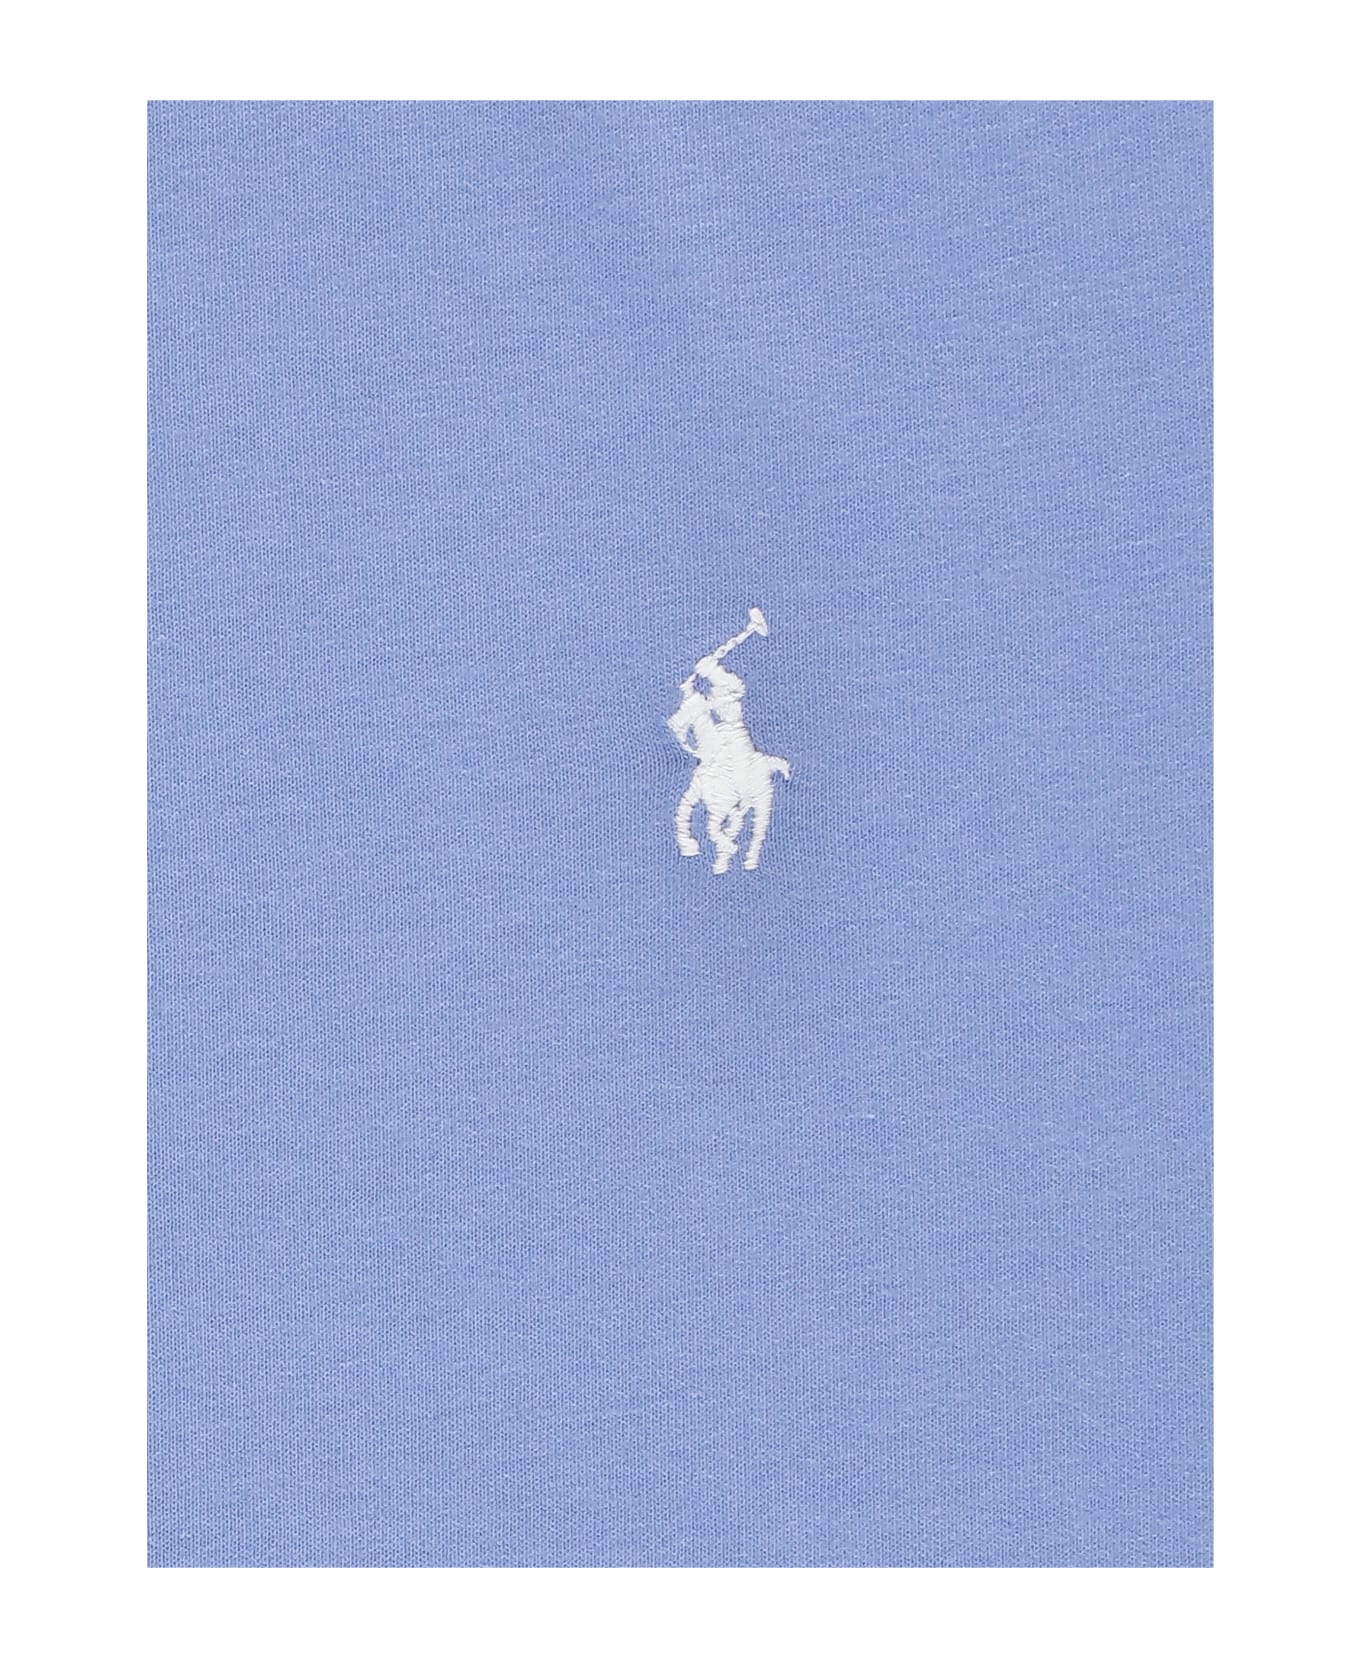 Ralph Lauren Pony T-shirt - Light Blue